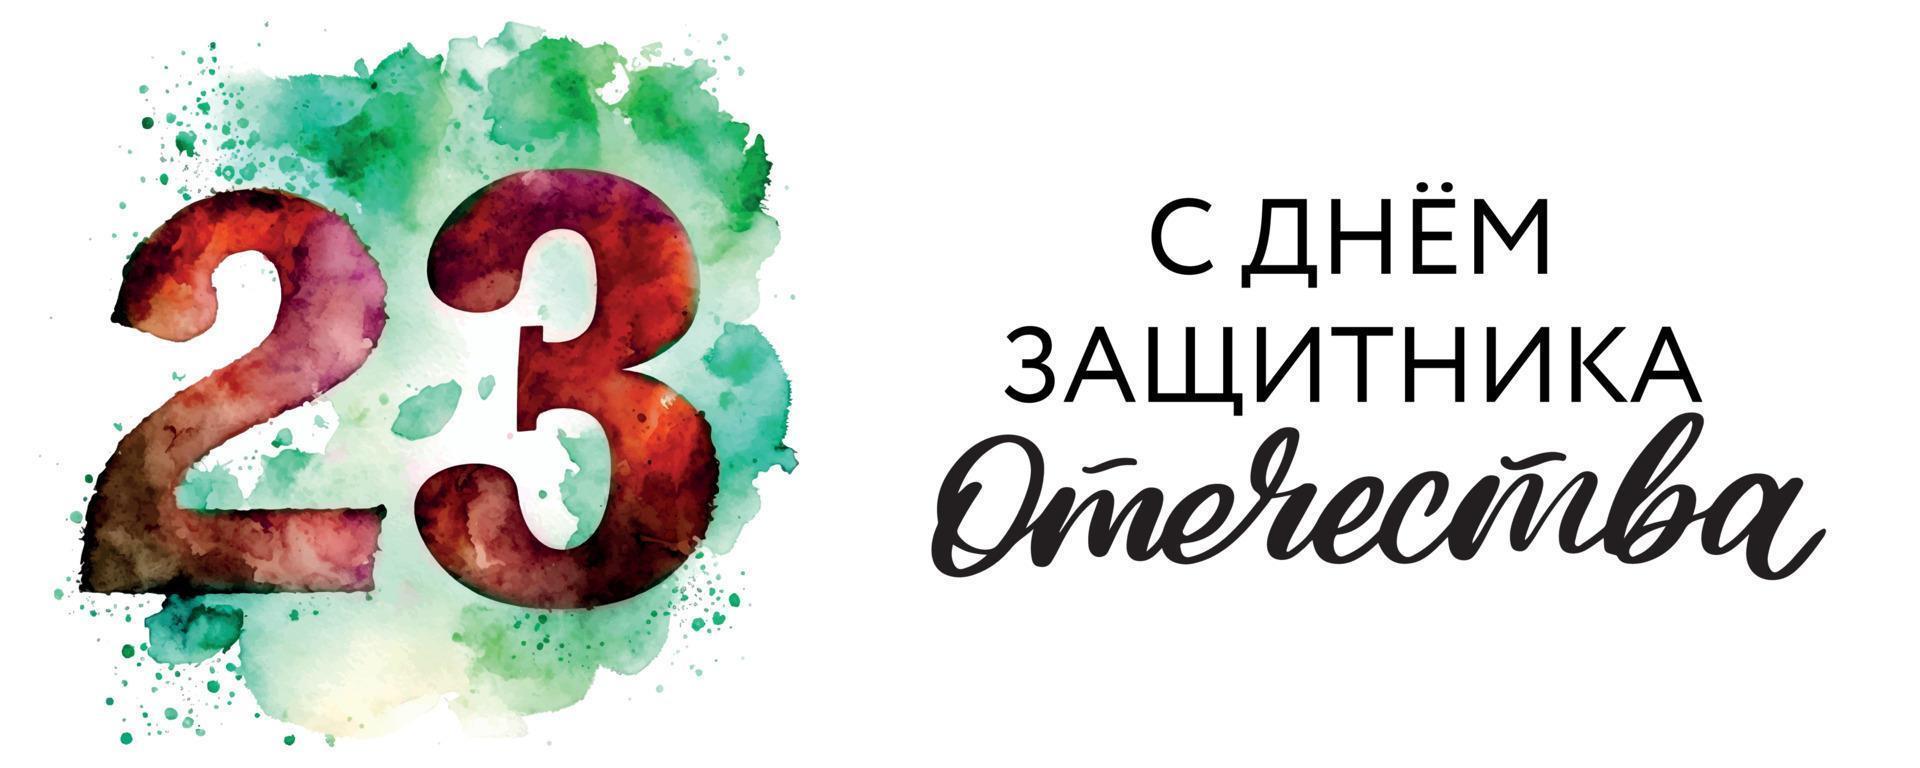 23 de fevereiro dia do defensor da pátria. feriado russo. ilustração vetorial. texto de tradução russo. 23 de fevereiro. parabéns vetor